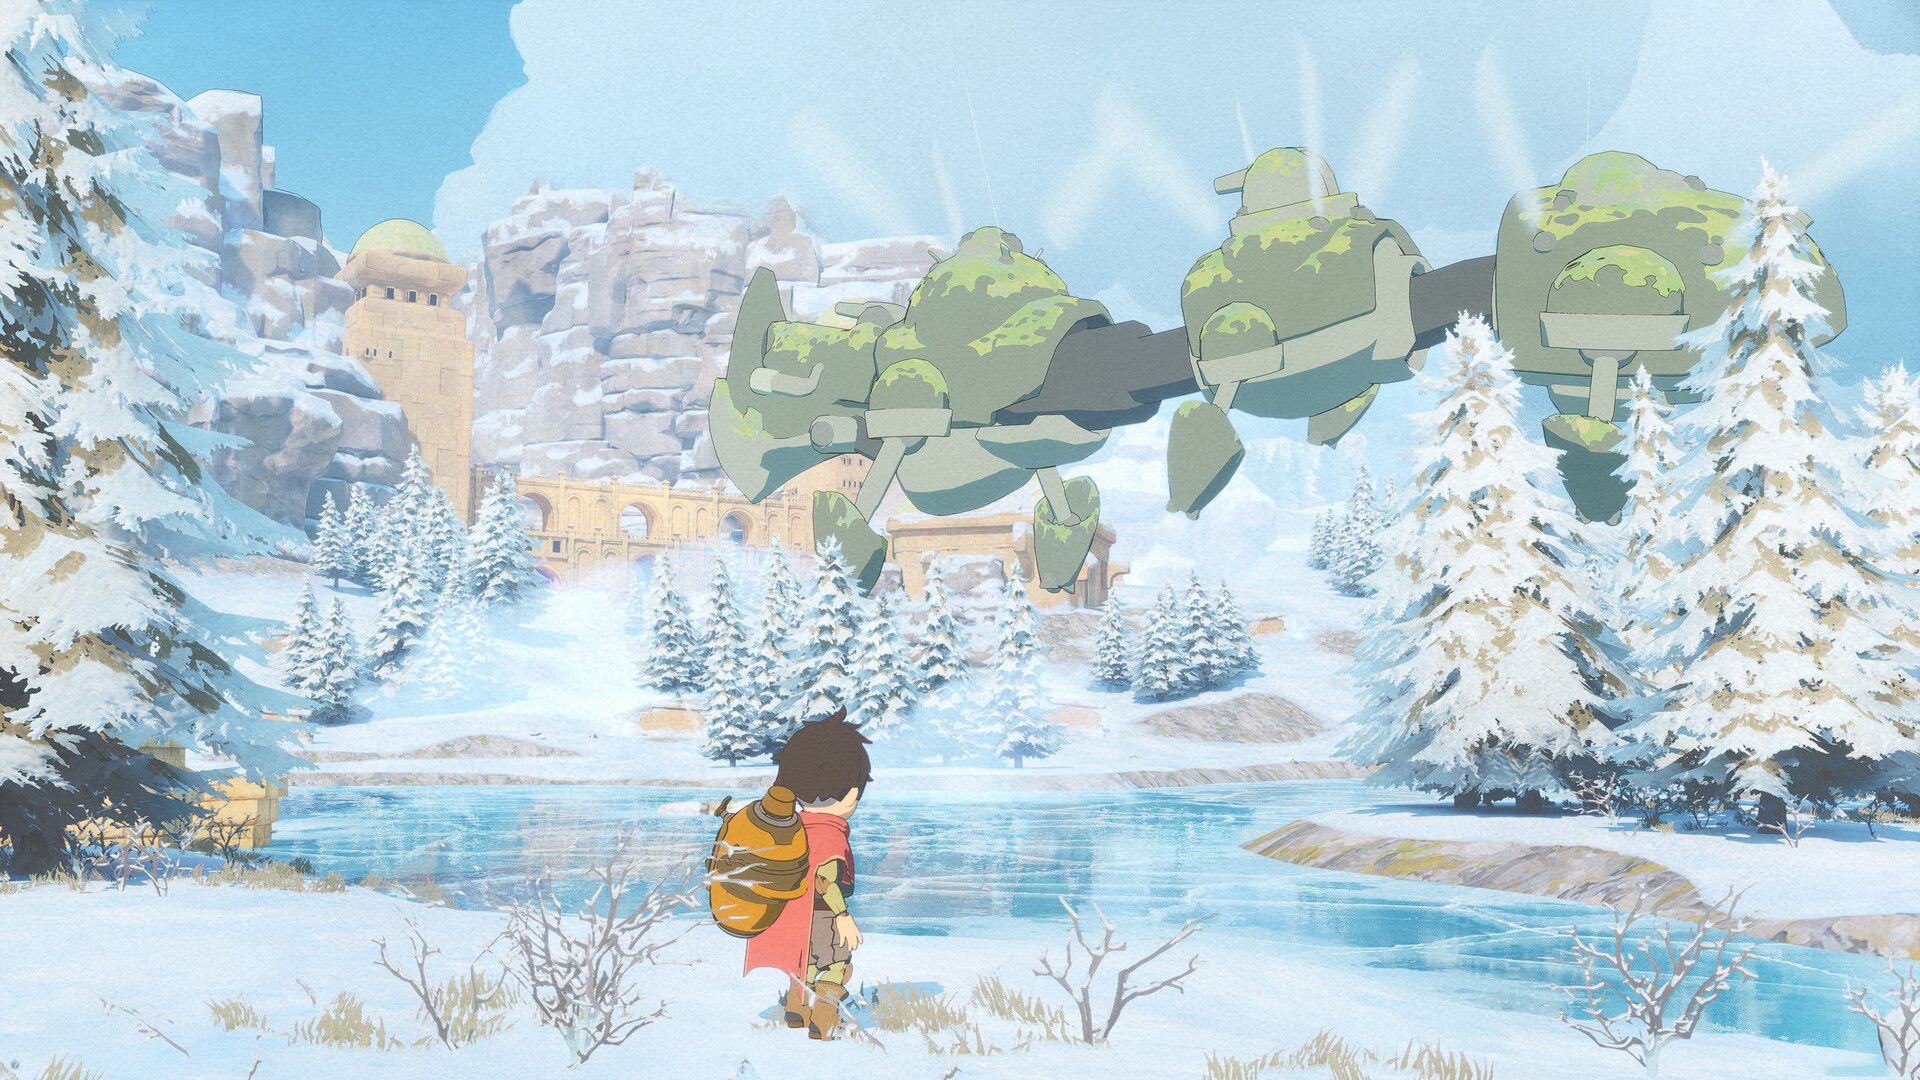 Europa: Game inspirado no Studio Ghibli e The Legend of Zelda já disponível  na Steam